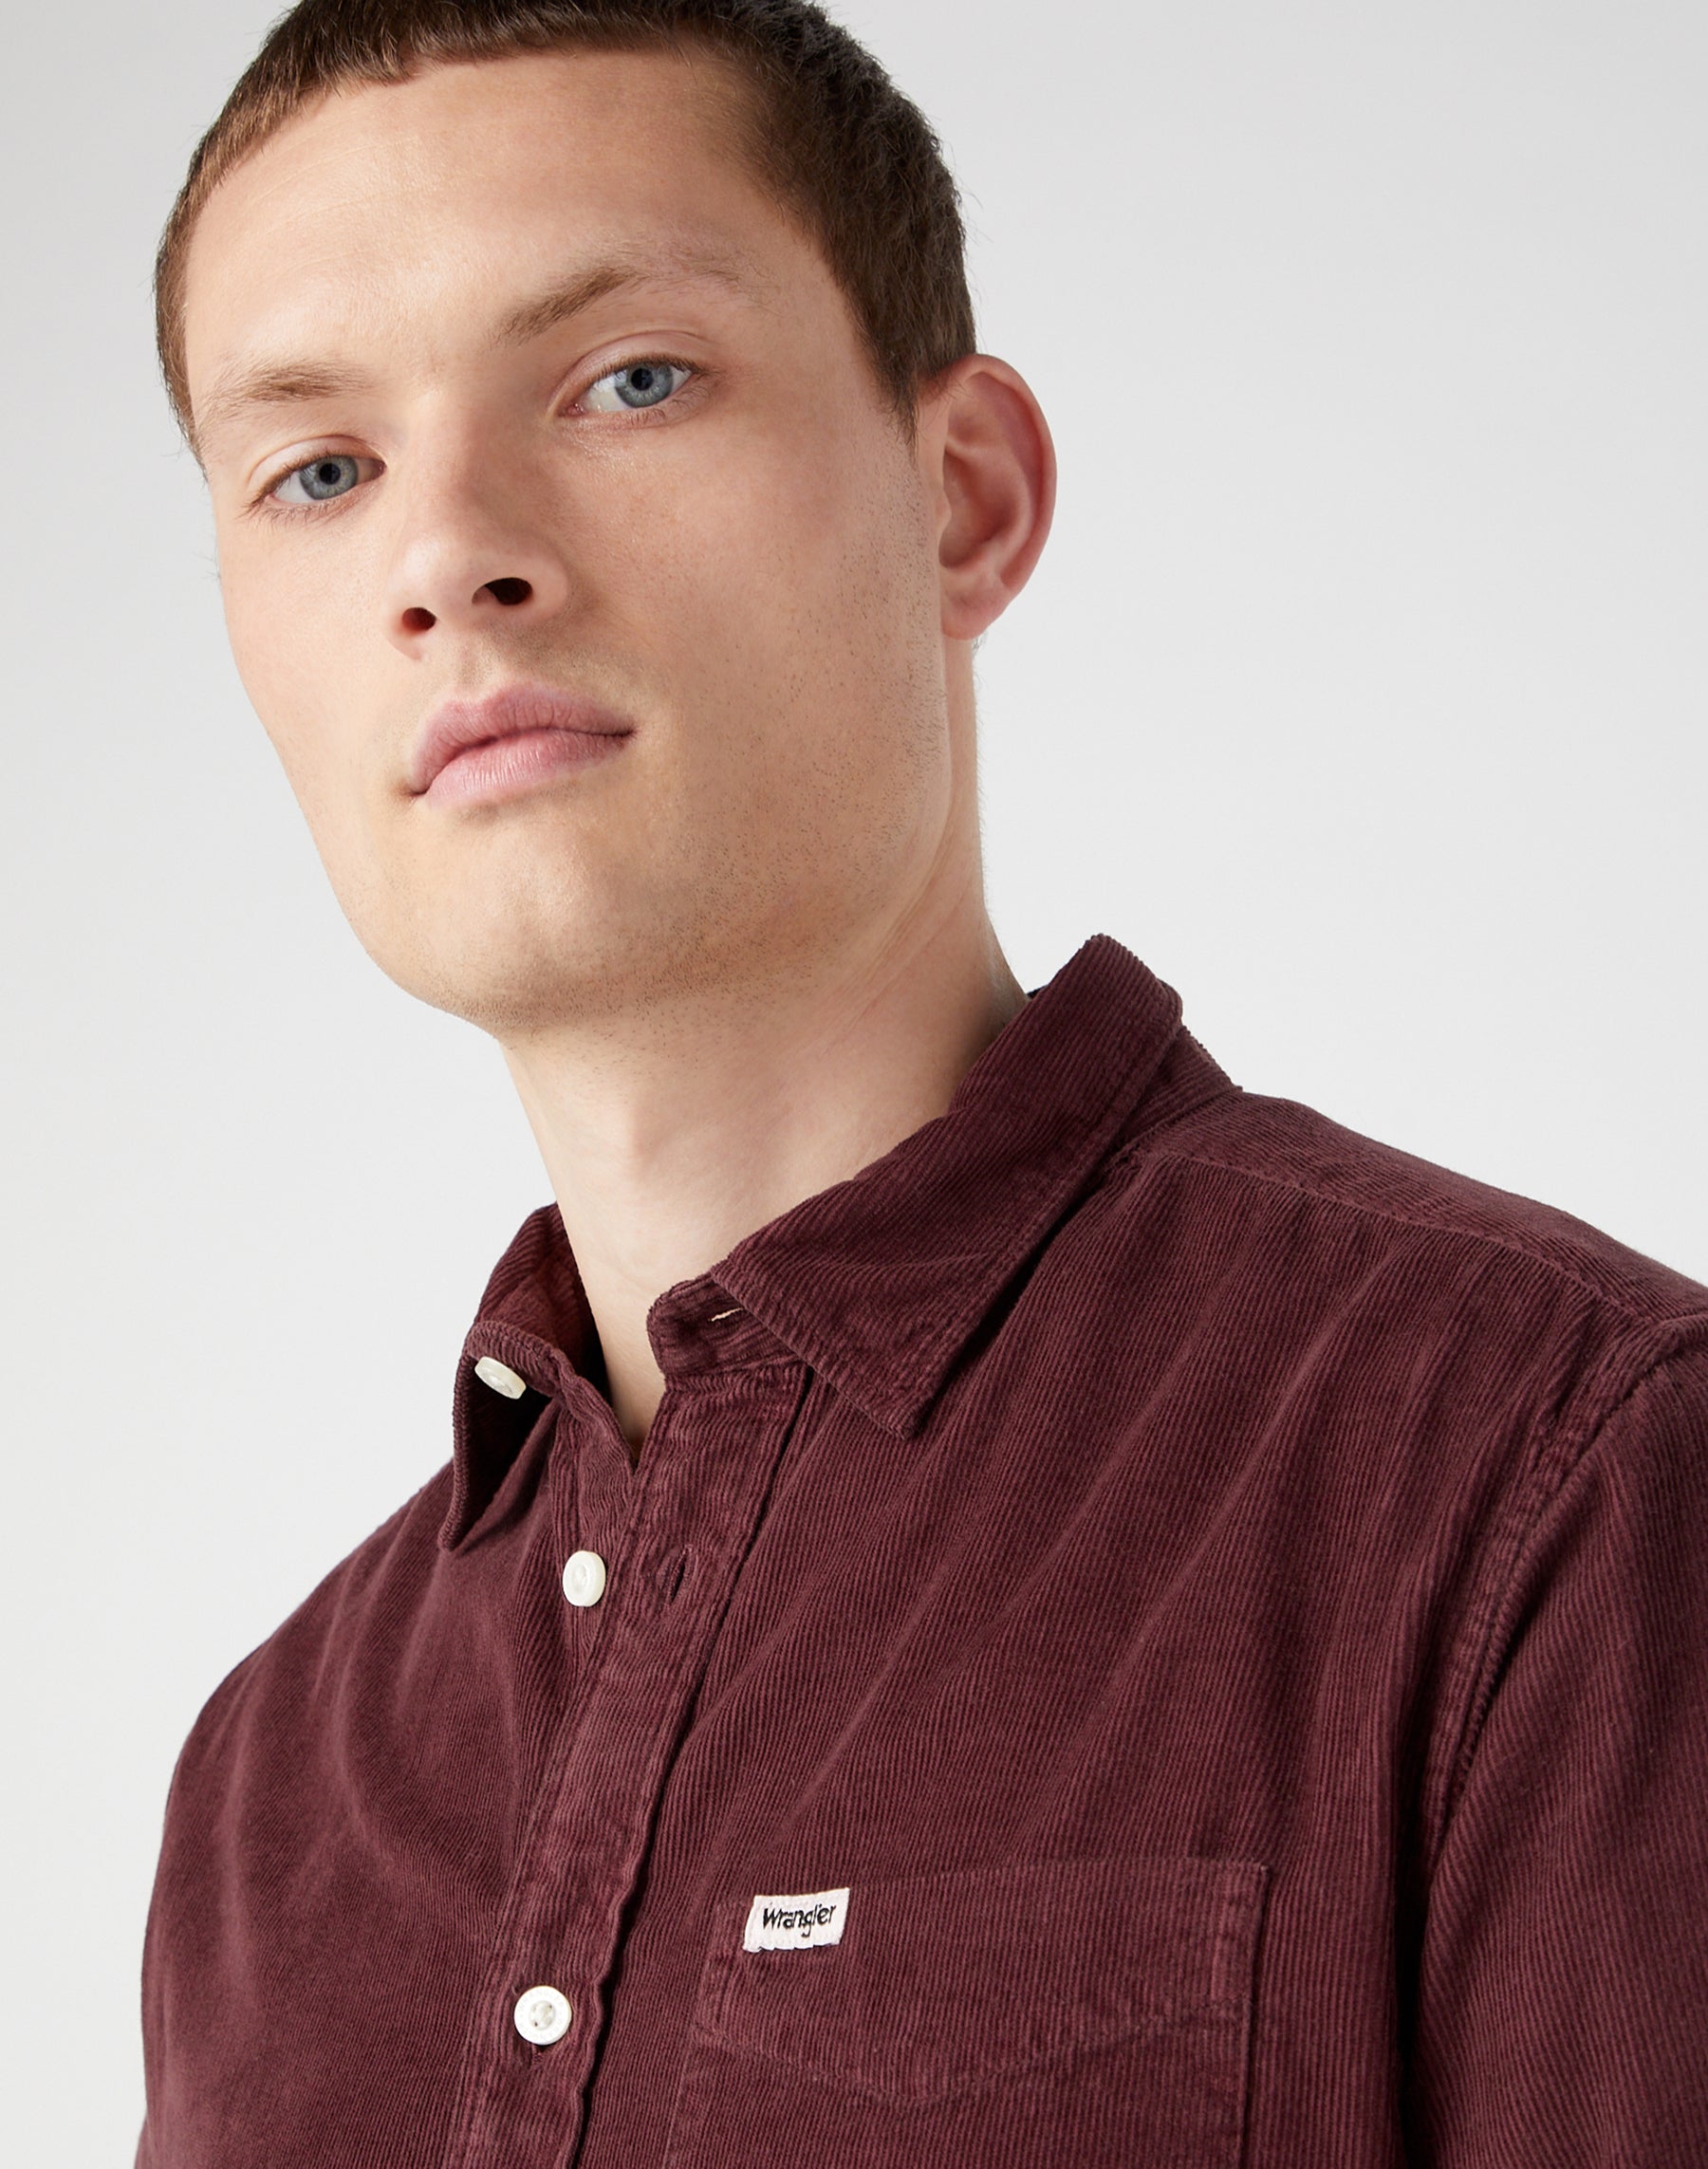 One Pocket Shirt in Dahlia Hemden Wrangler   